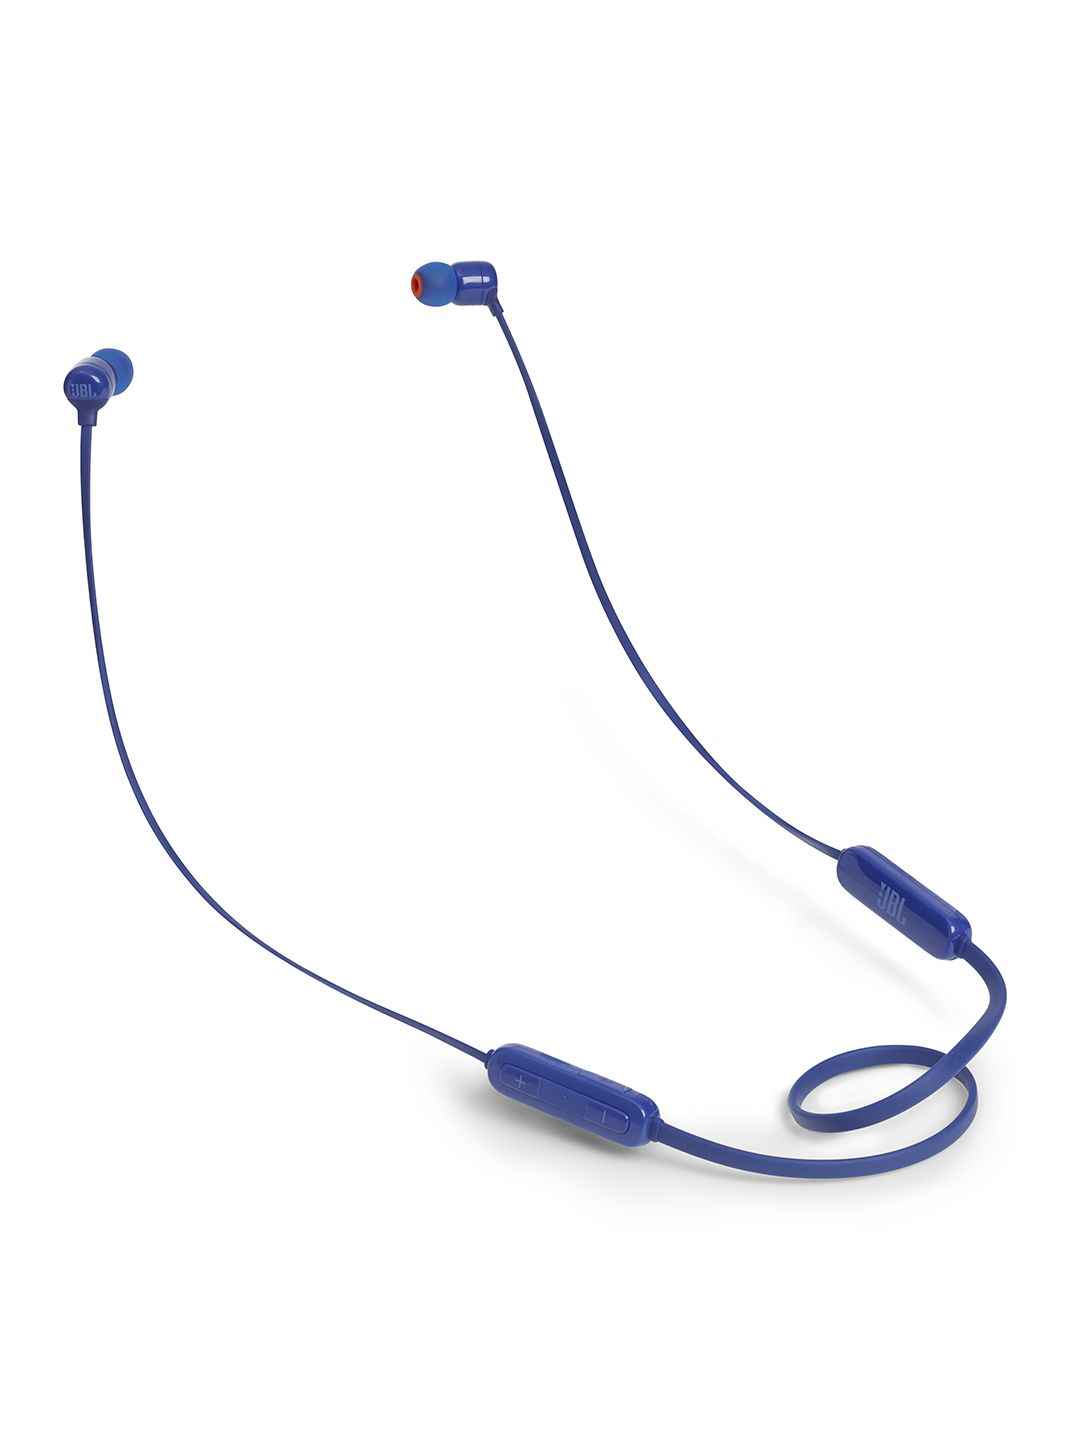 JBL Unisex Blue Wireless In-Ear Headphones T110BT Price in India